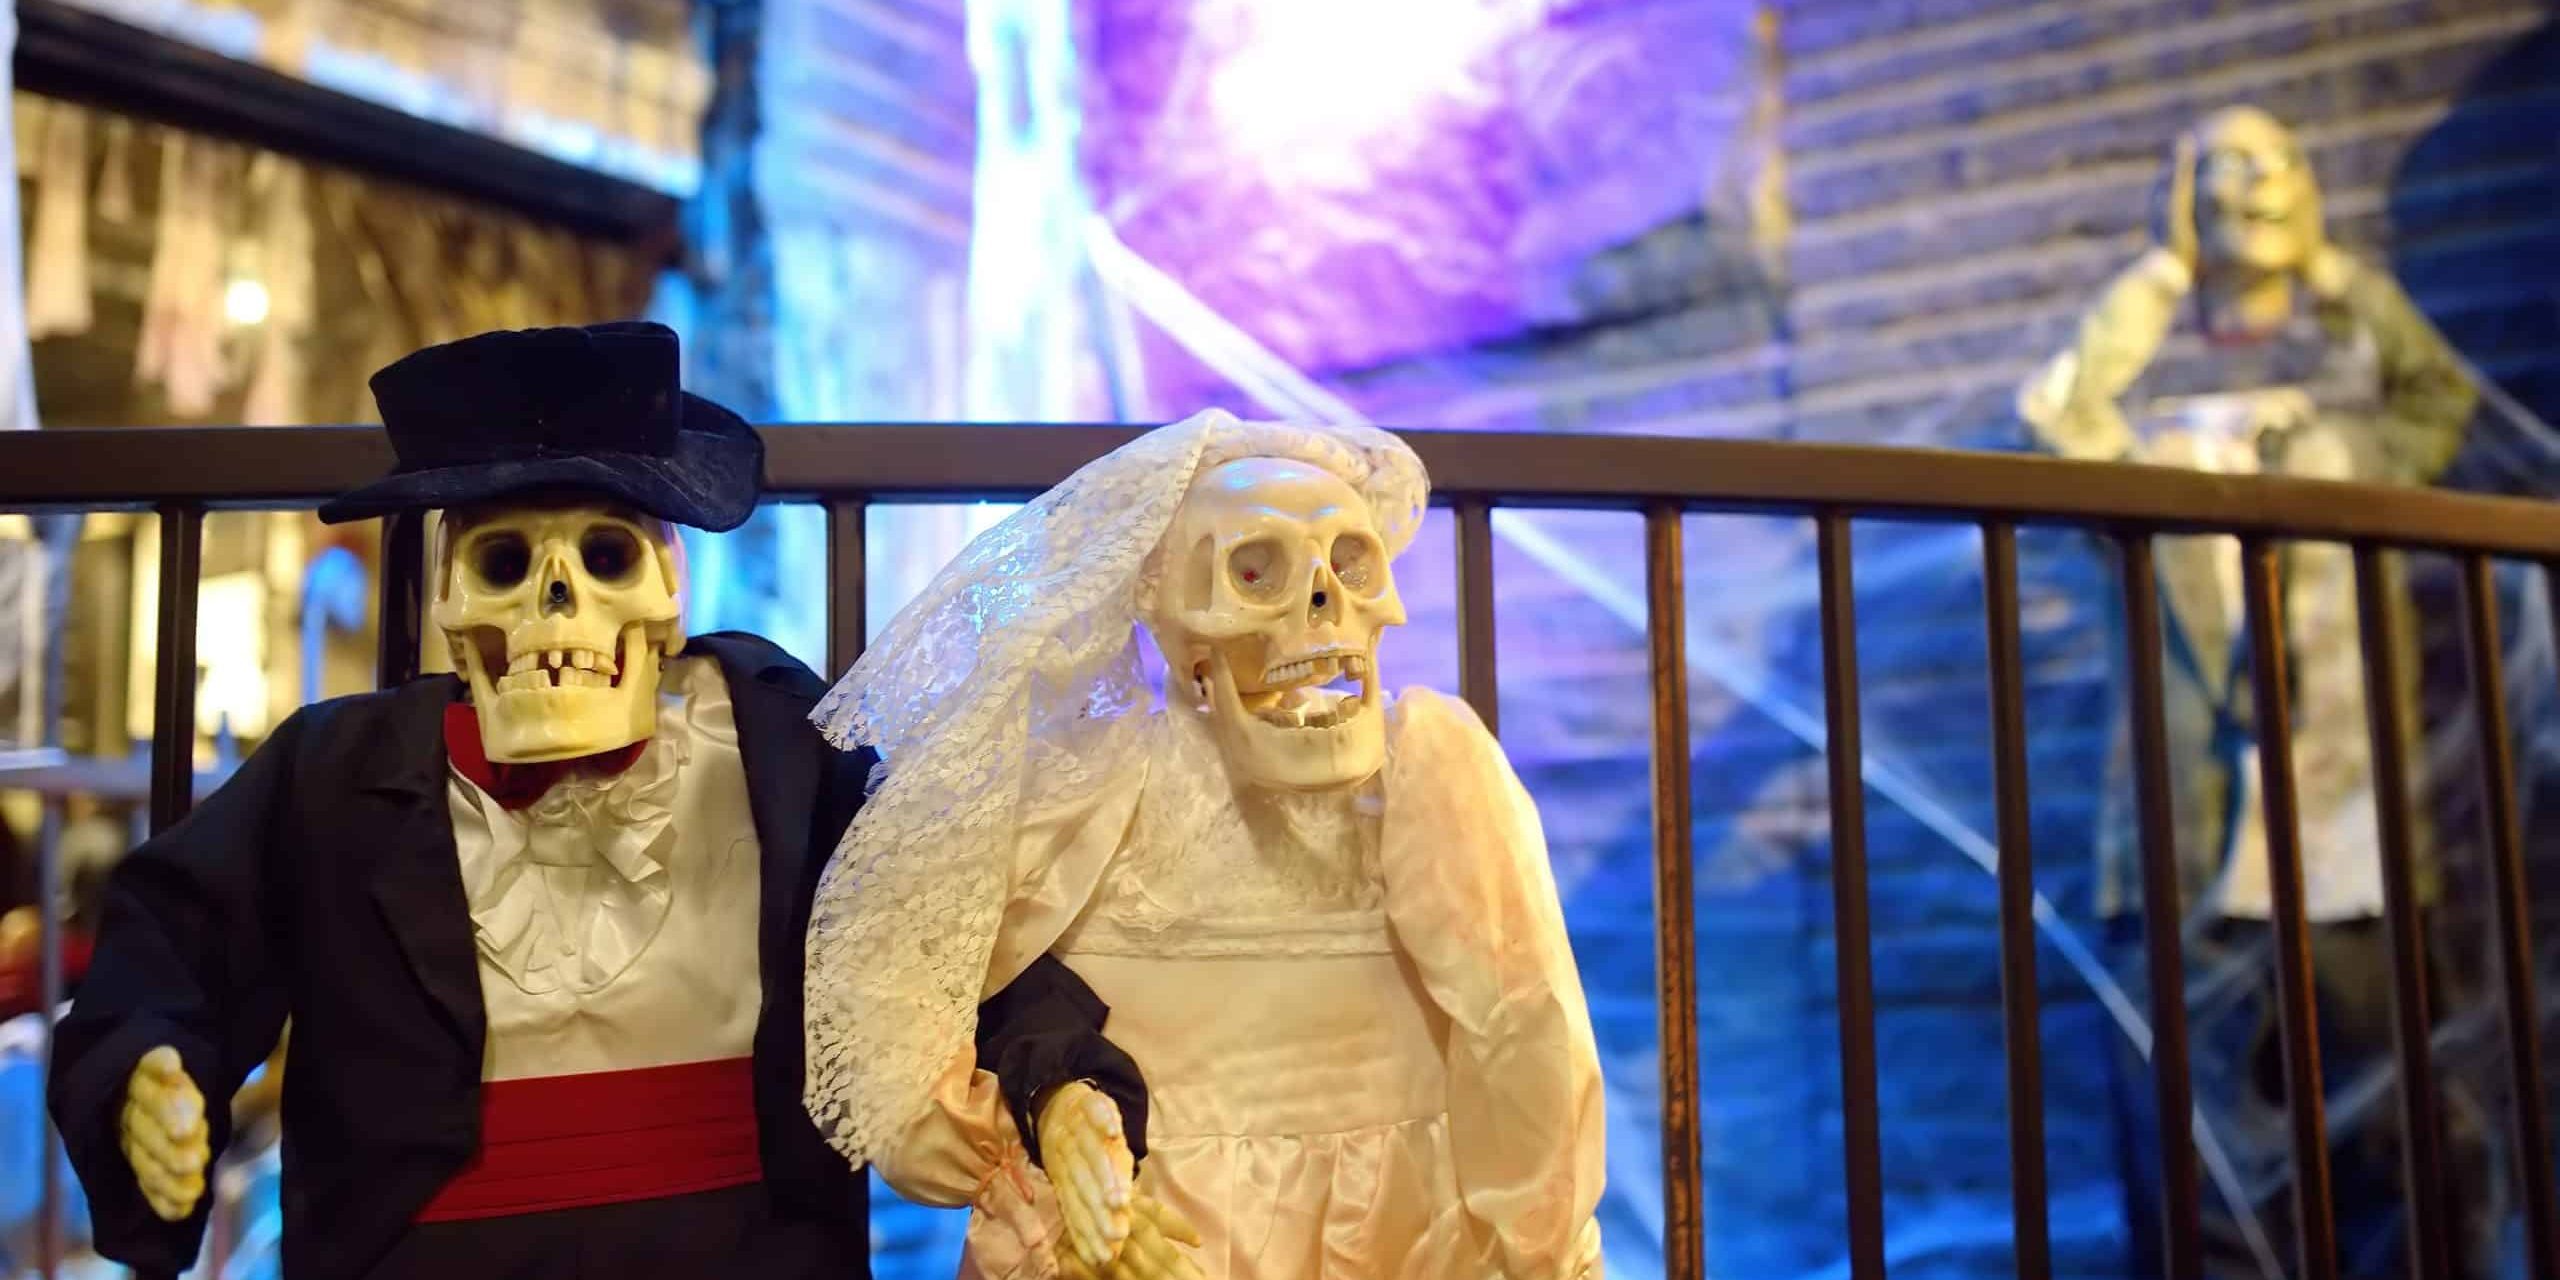 wedding-pair-of-scary-skeletons-in-chelsea-market-2022-11-11-19-17-24-utc